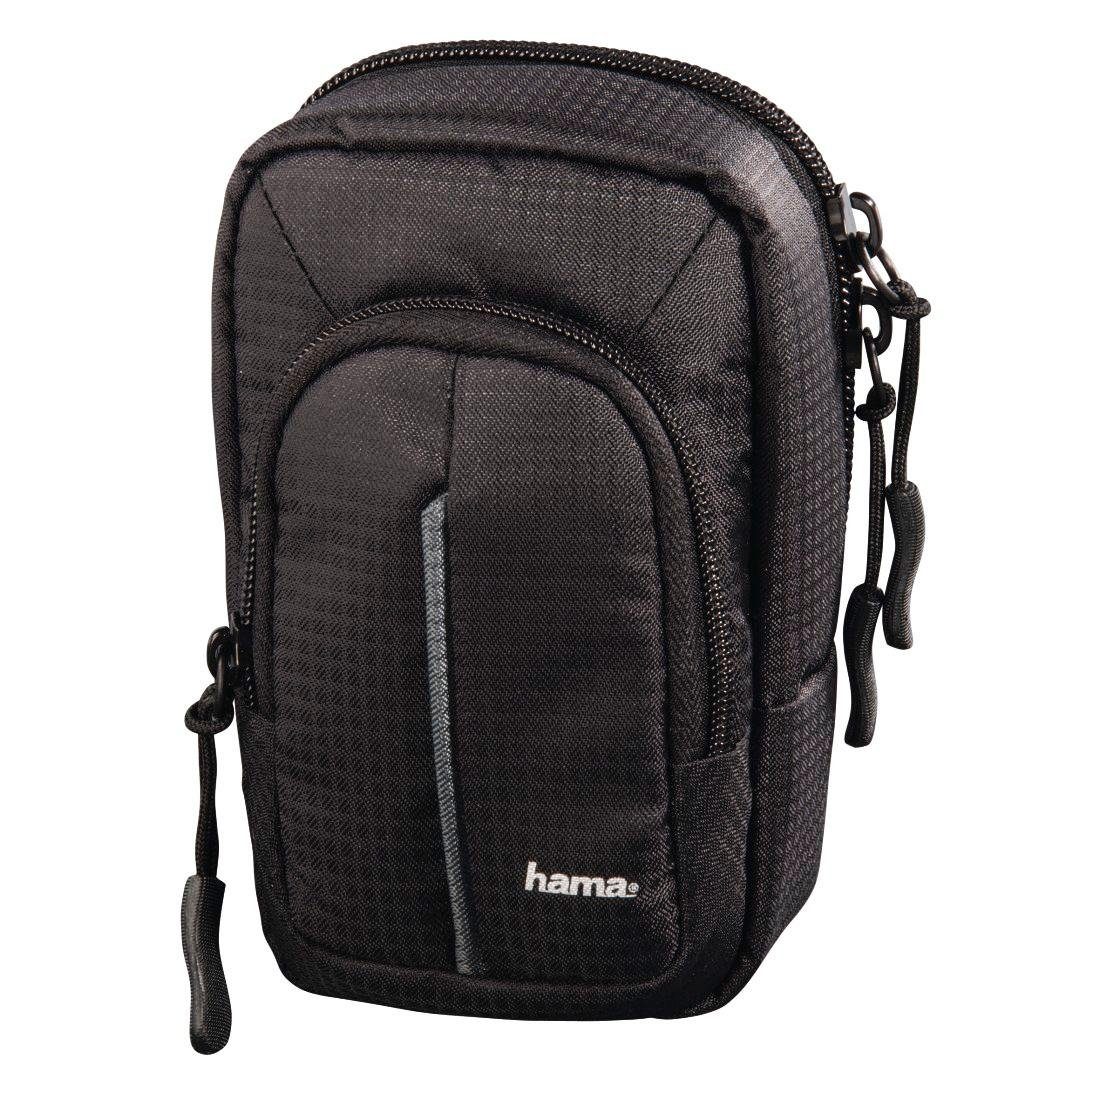 Hama Kameratasche Tasche für Digitalkameras mit Gürtelschlaufe Fancy Urban, Größe 80M